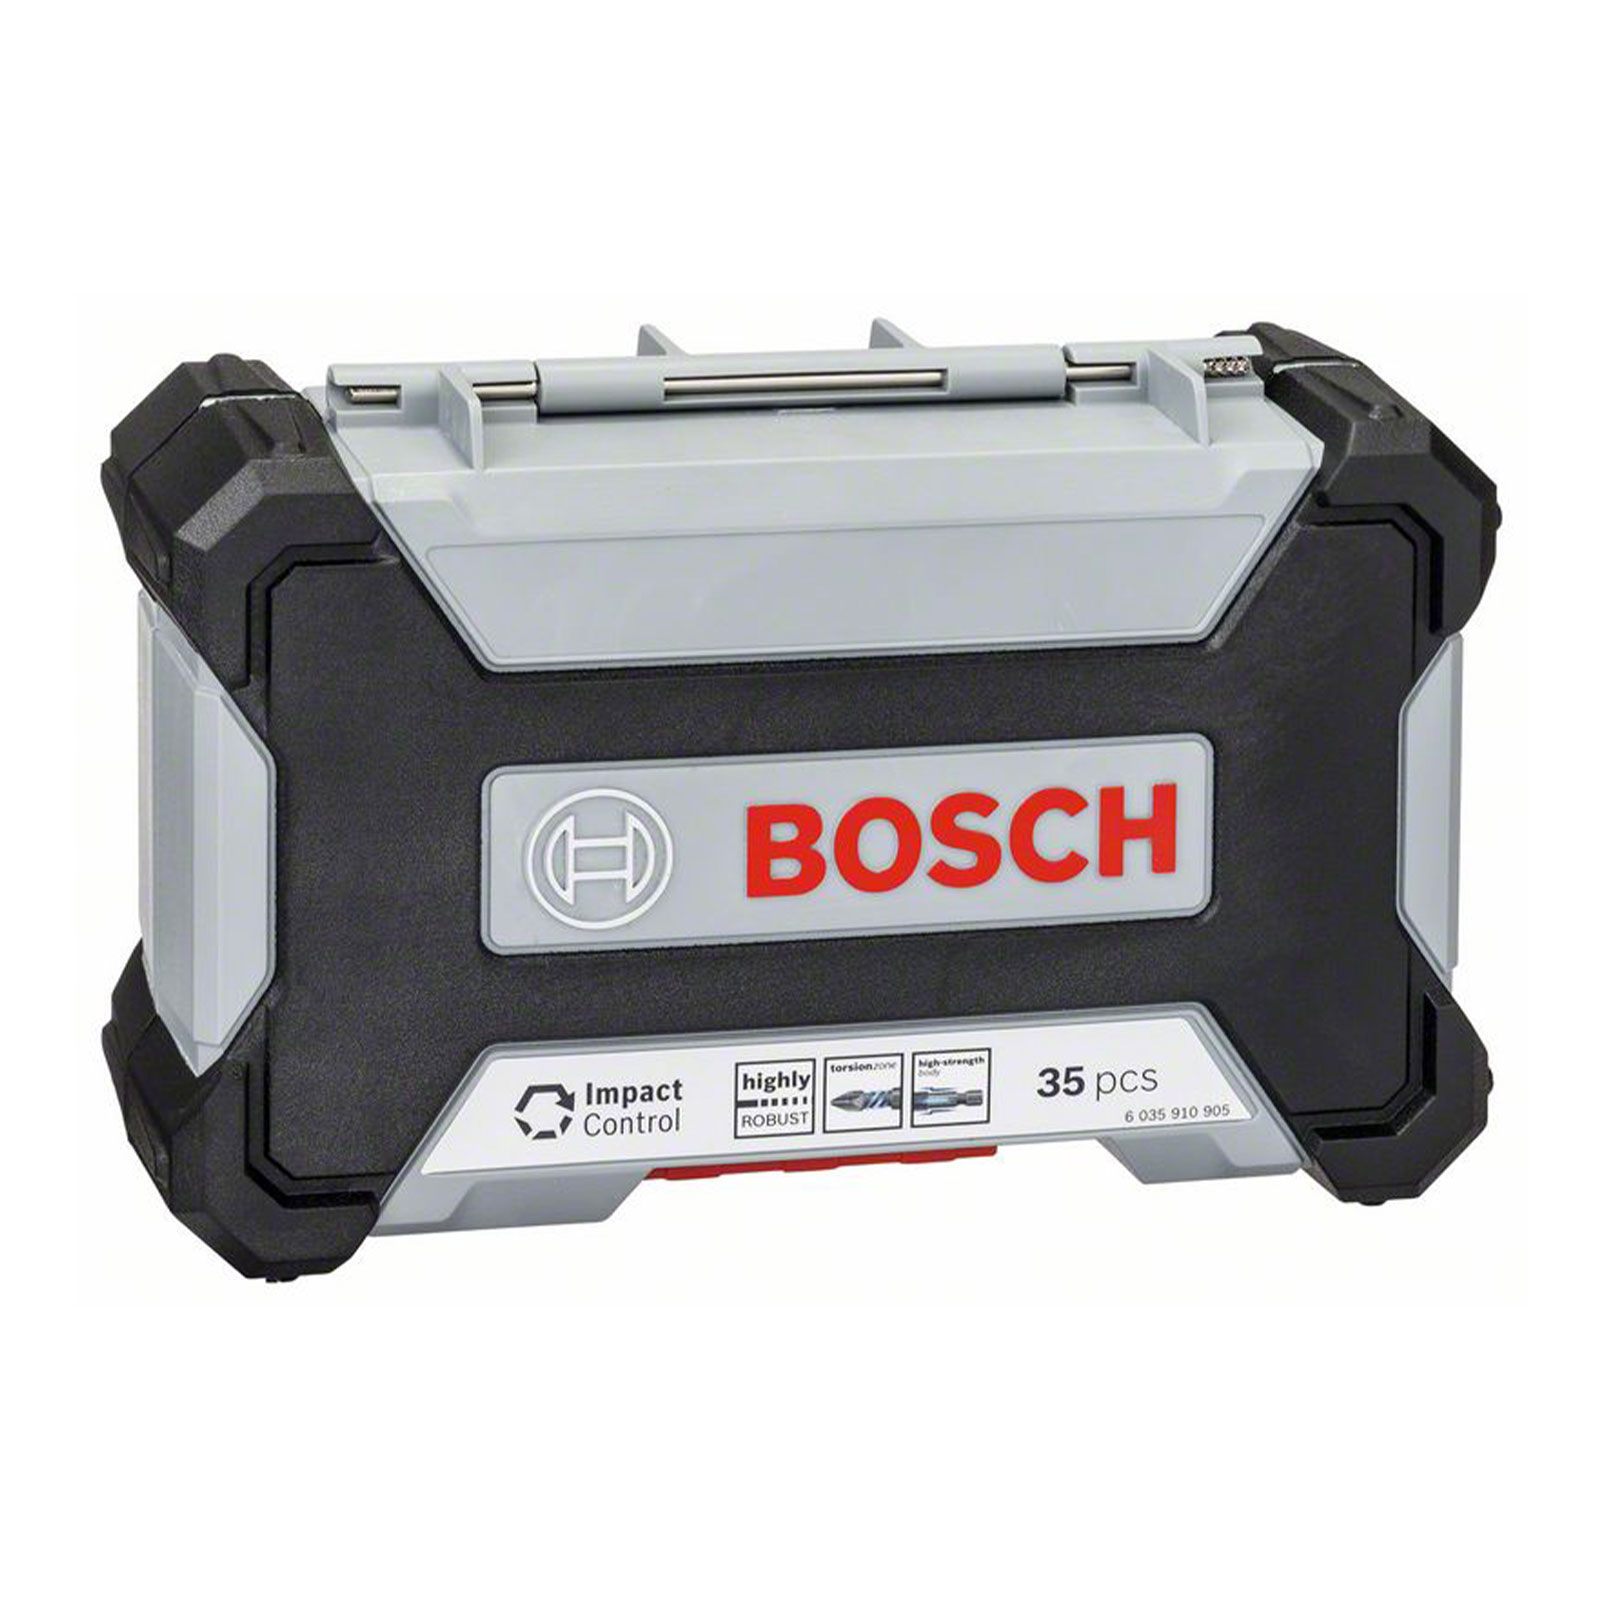 Bosch Professional 35-tlg. Impact Control HSS-Bohrer- und Schrauberbit-Set